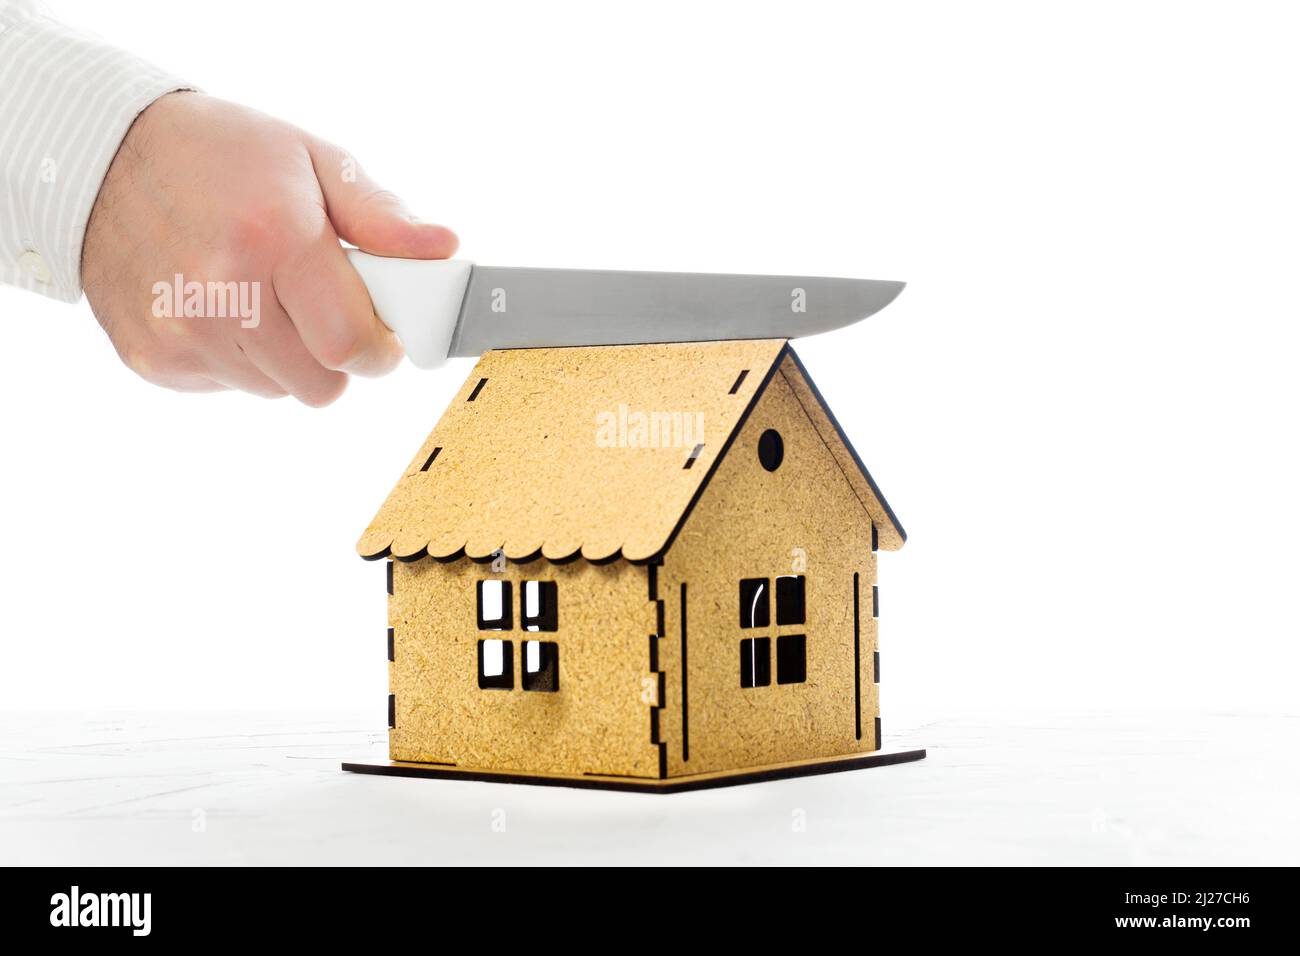 Macho cortando a mano un modelo de casa en miniatura con un cuchillo de cocina por la mitad. La división del hogar en un divorcio. Foto de stock